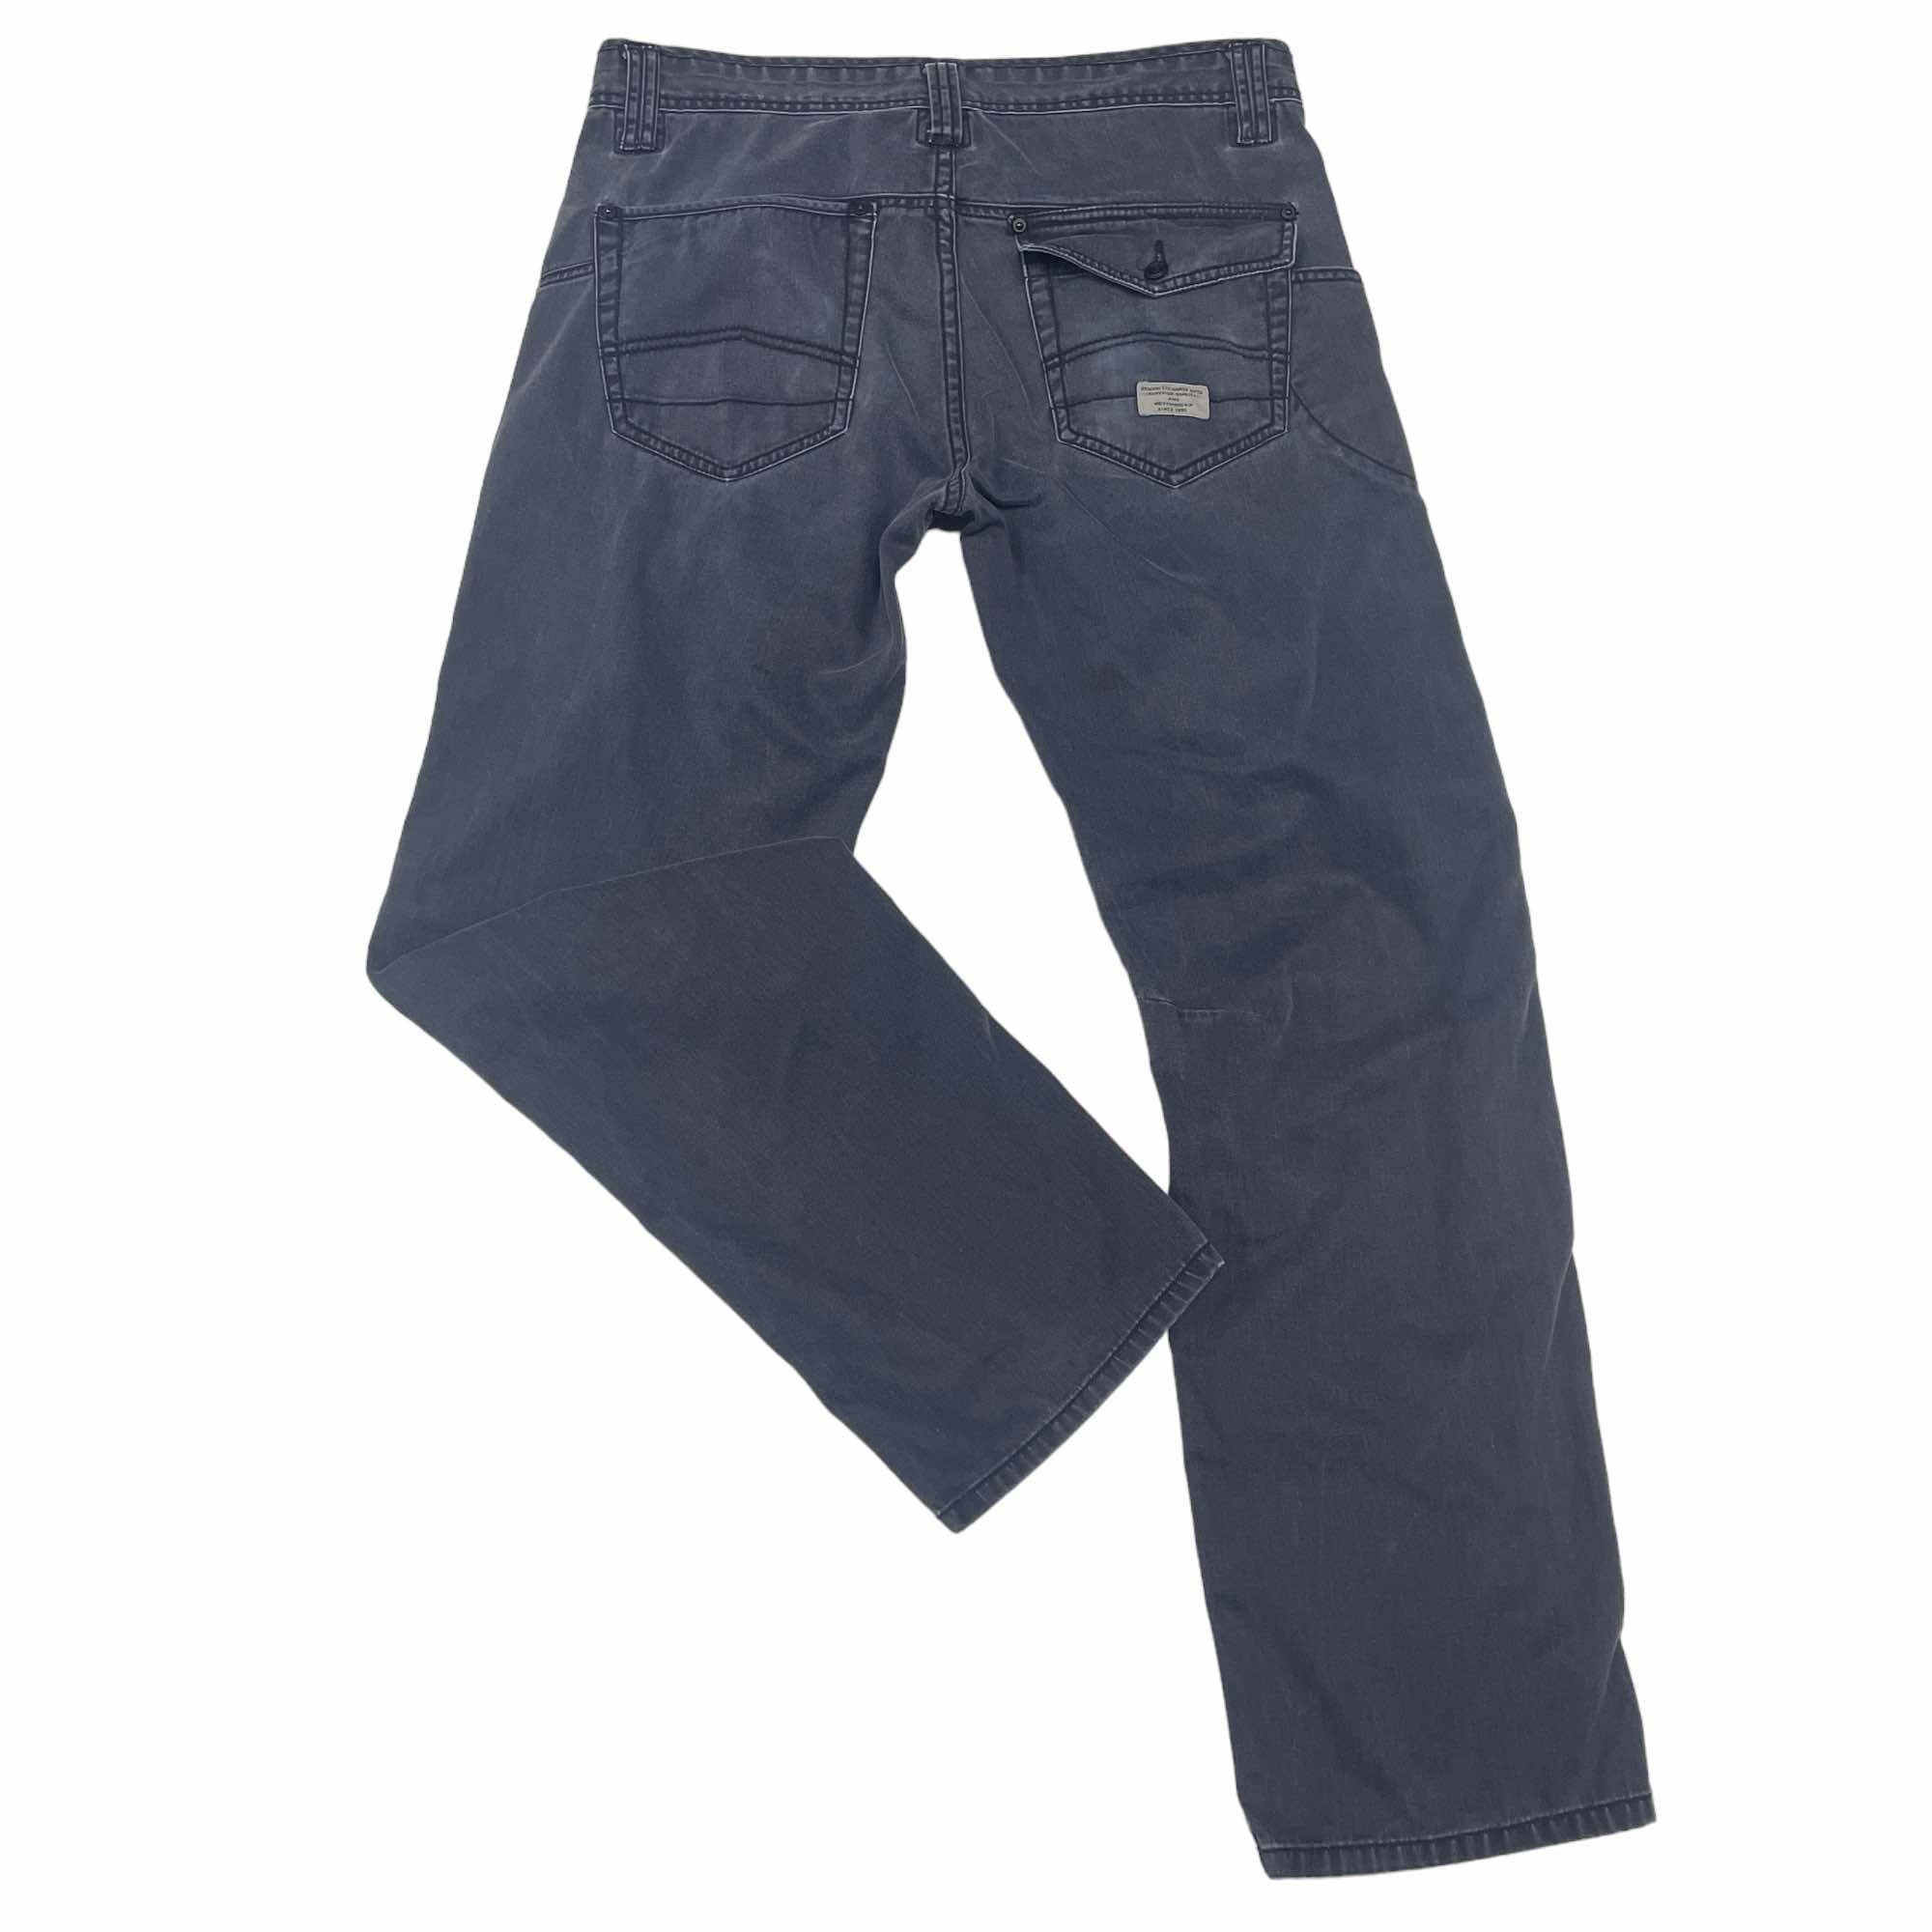 Armani Exchange Denim Jeans - W32 L30